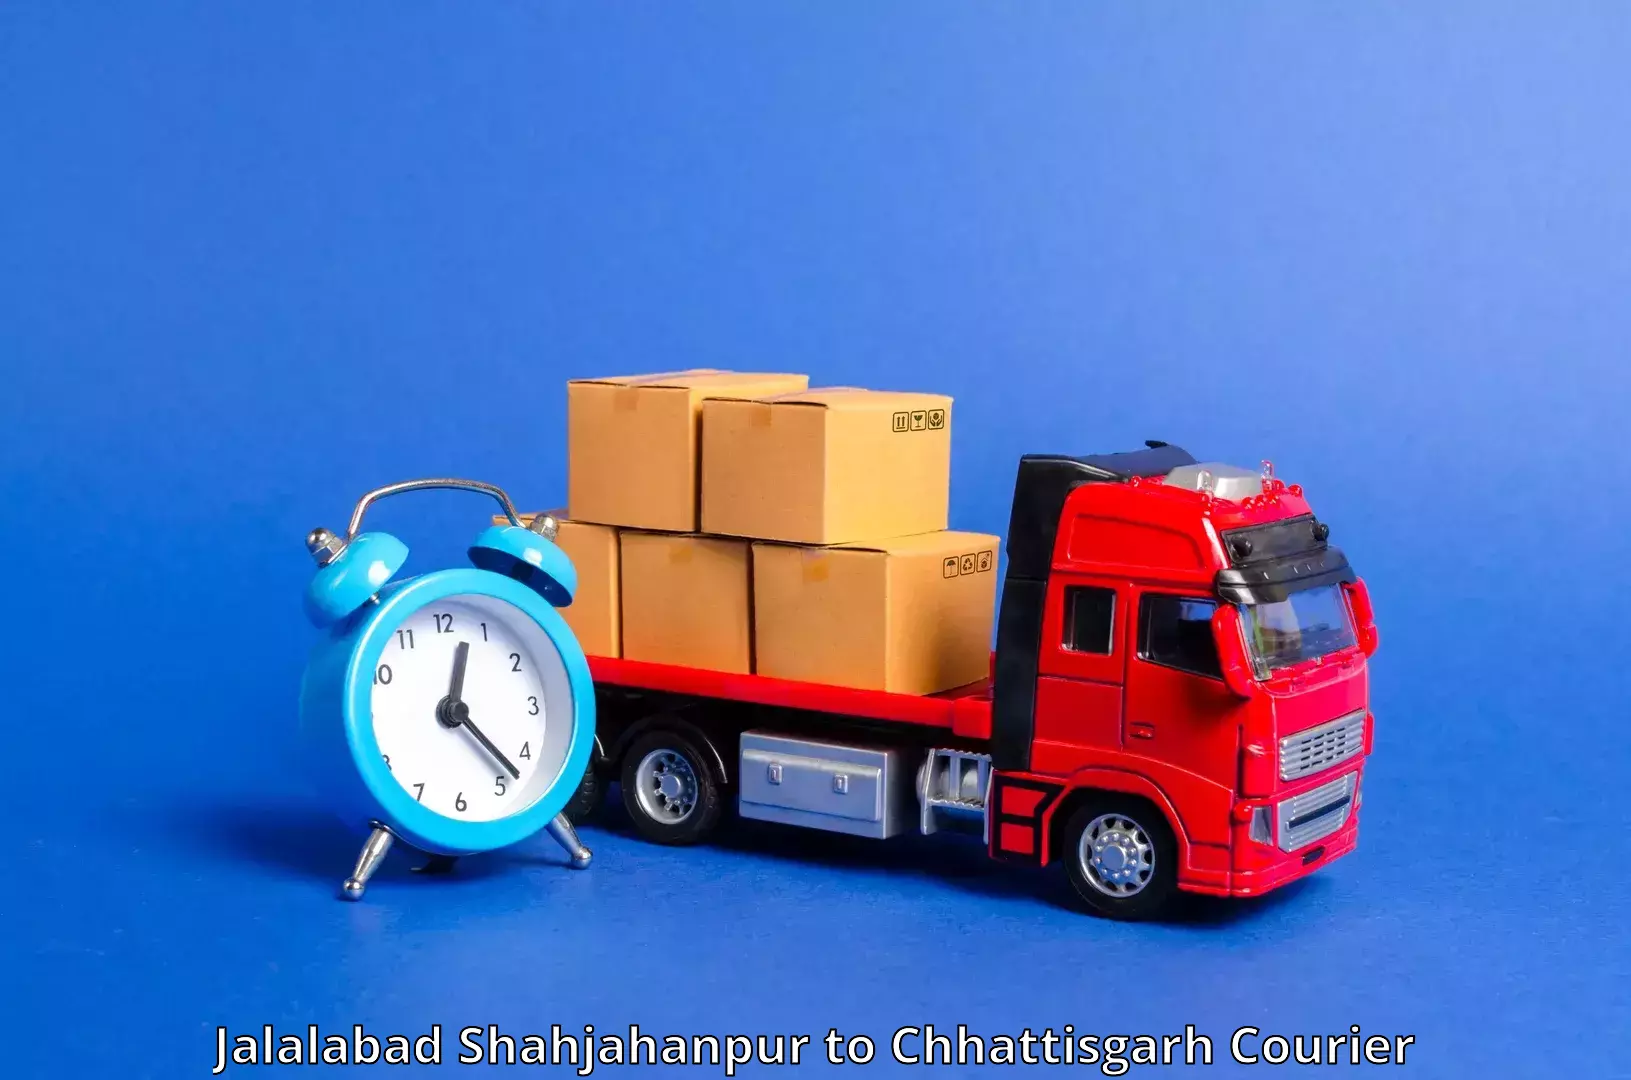 Domestic courier Jalalabad Shahjahanpur to Jashpur Nagar